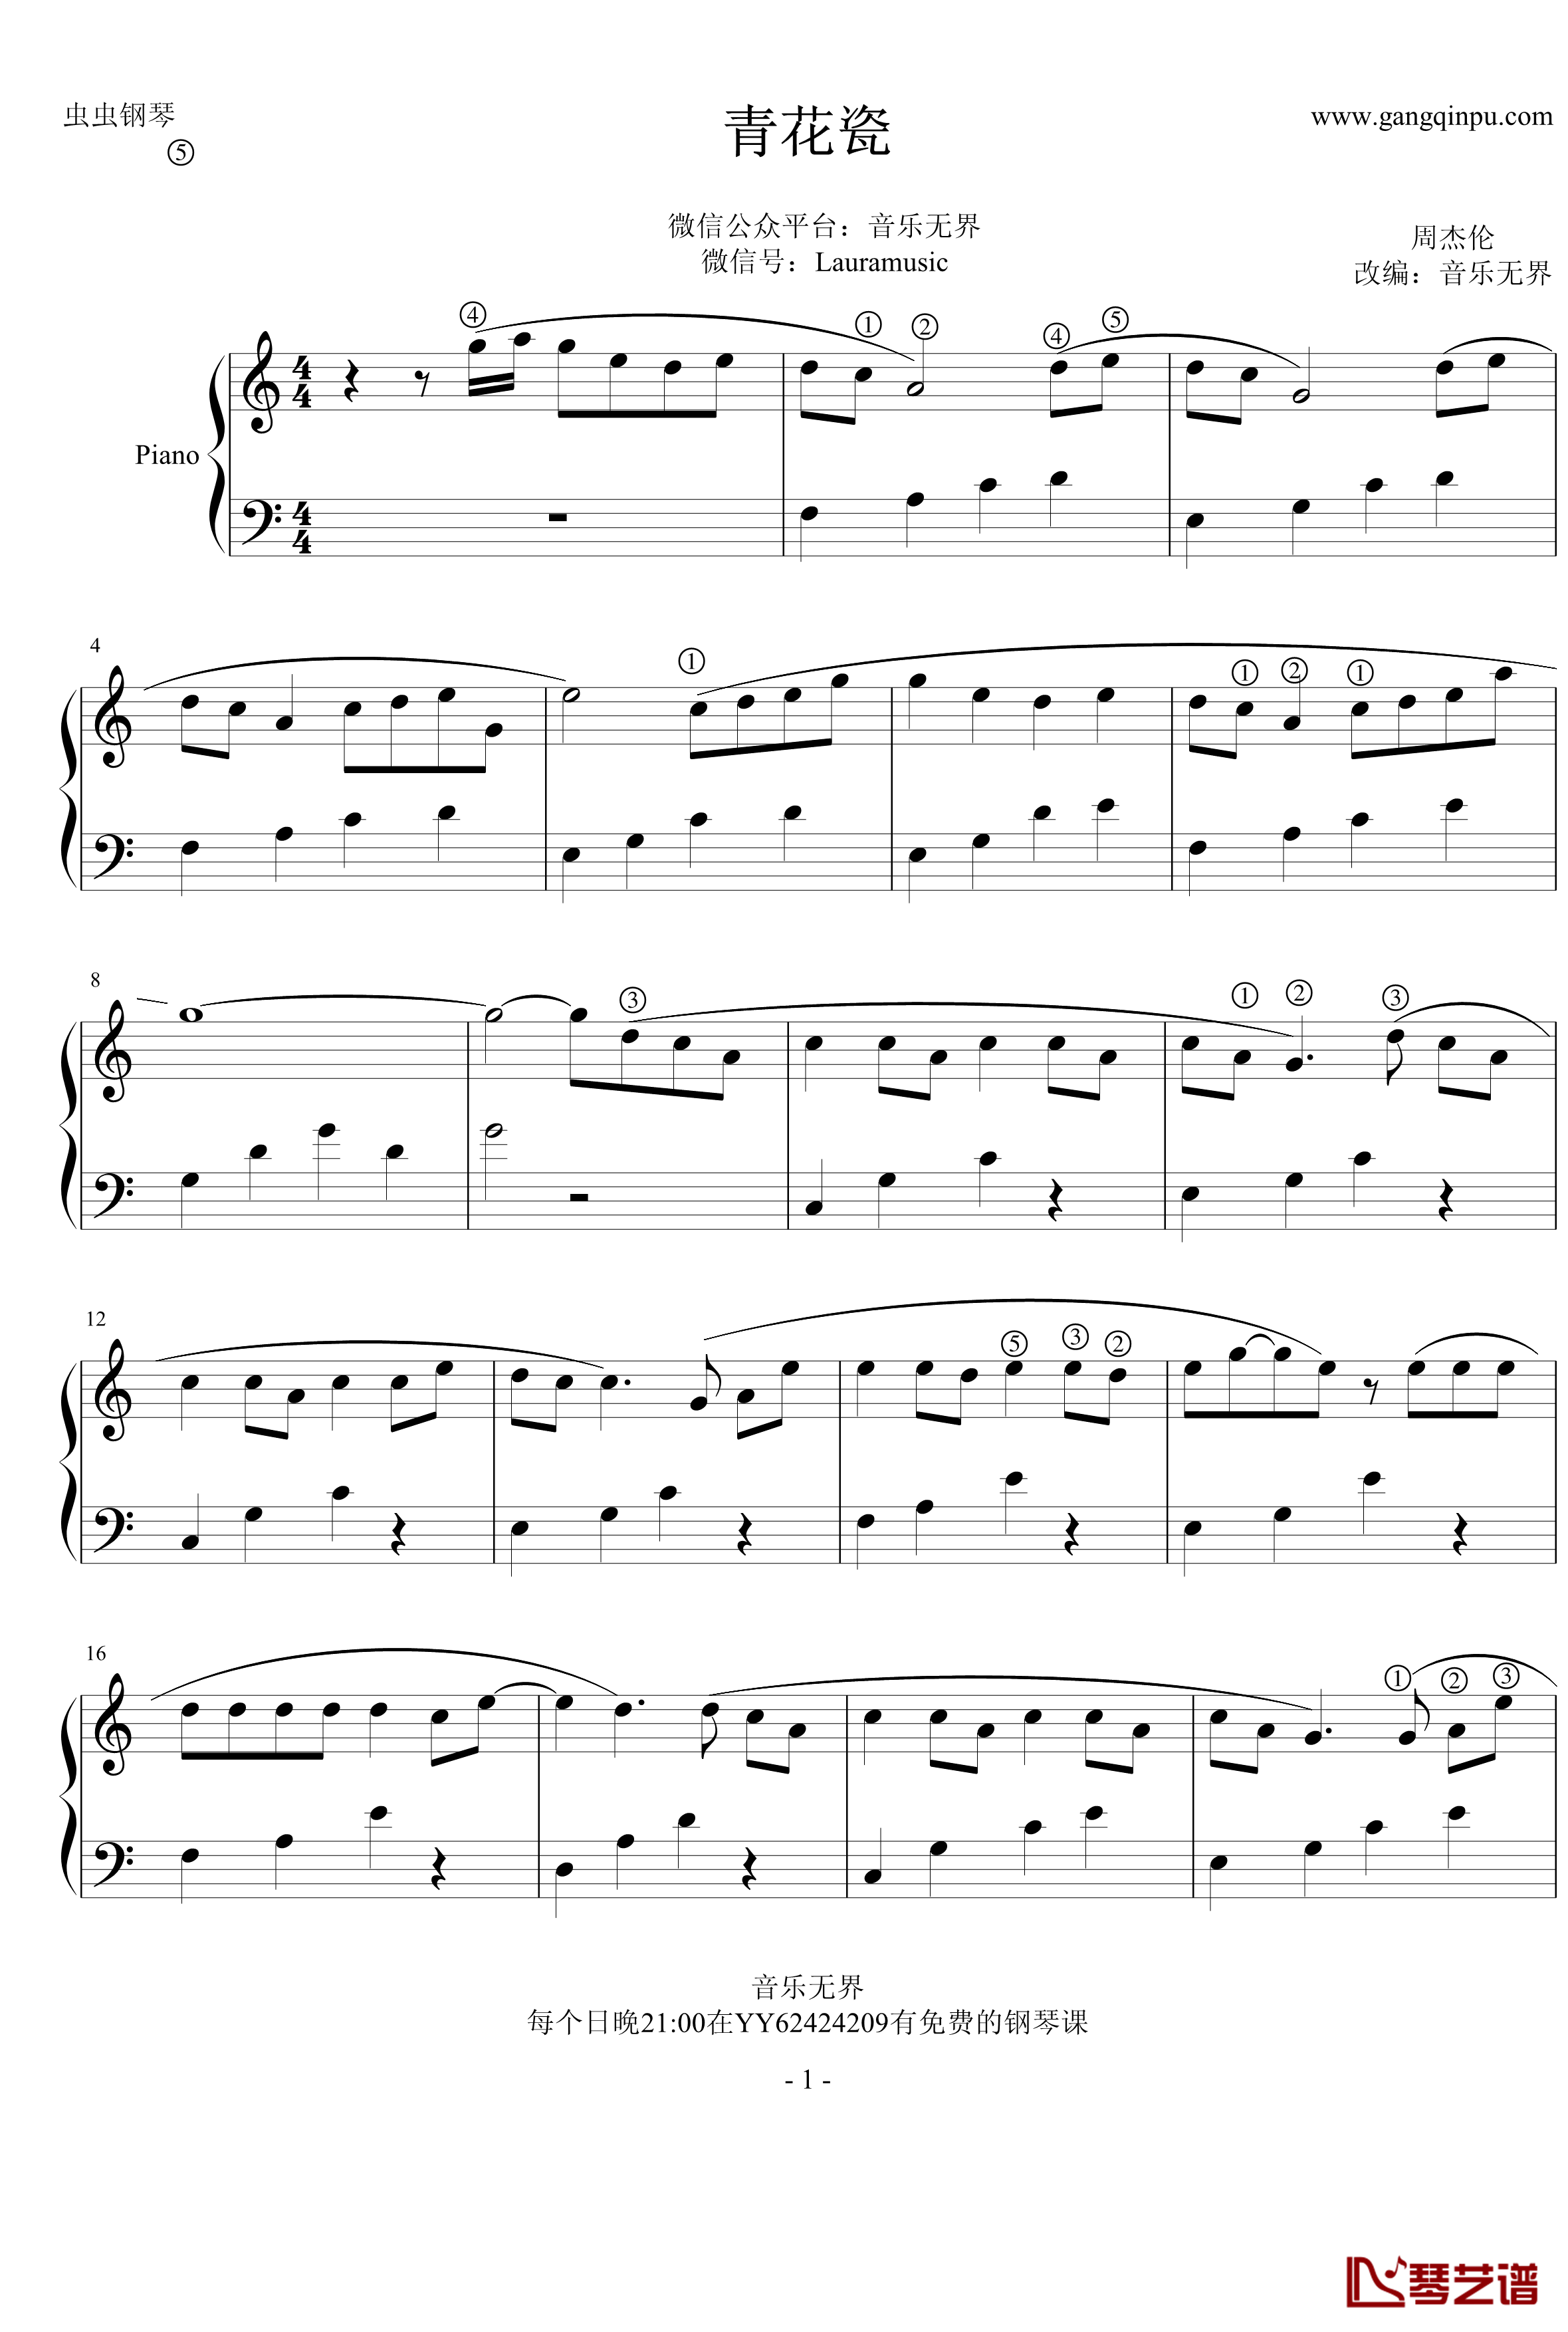 青花瓷钢琴谱-无升降号简单版-周杰伦1